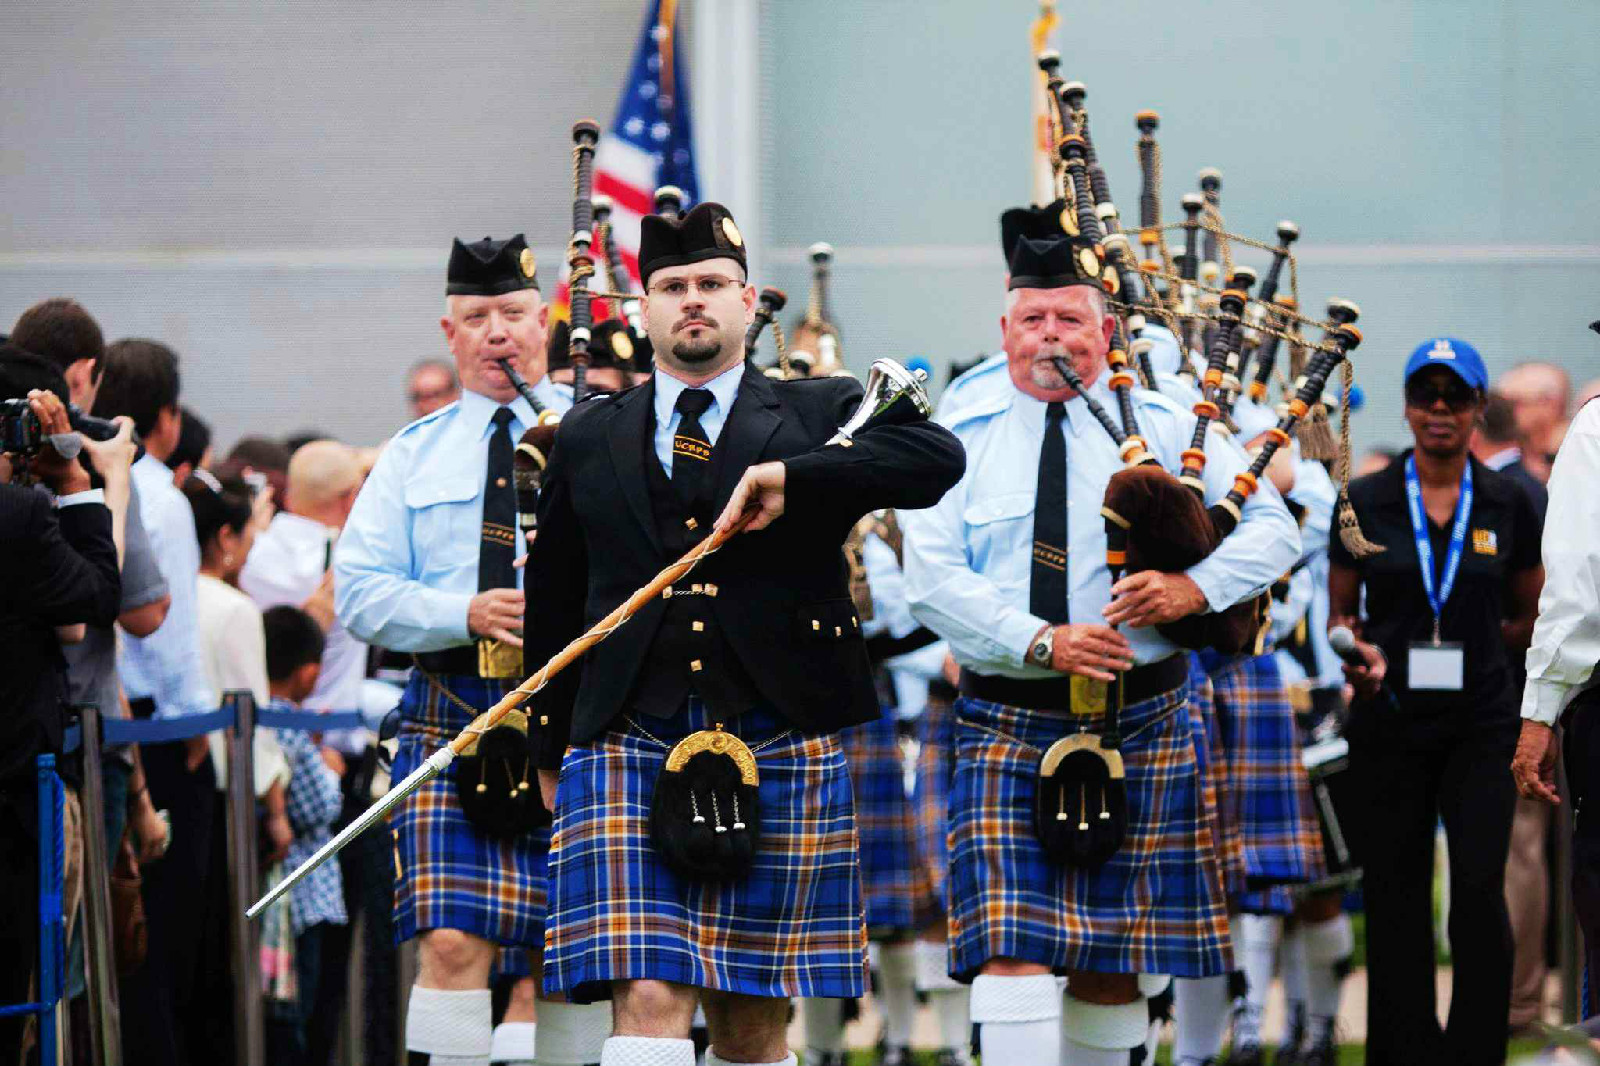 畢業典禮上的蘇格蘭風笛演奏是該校傳統